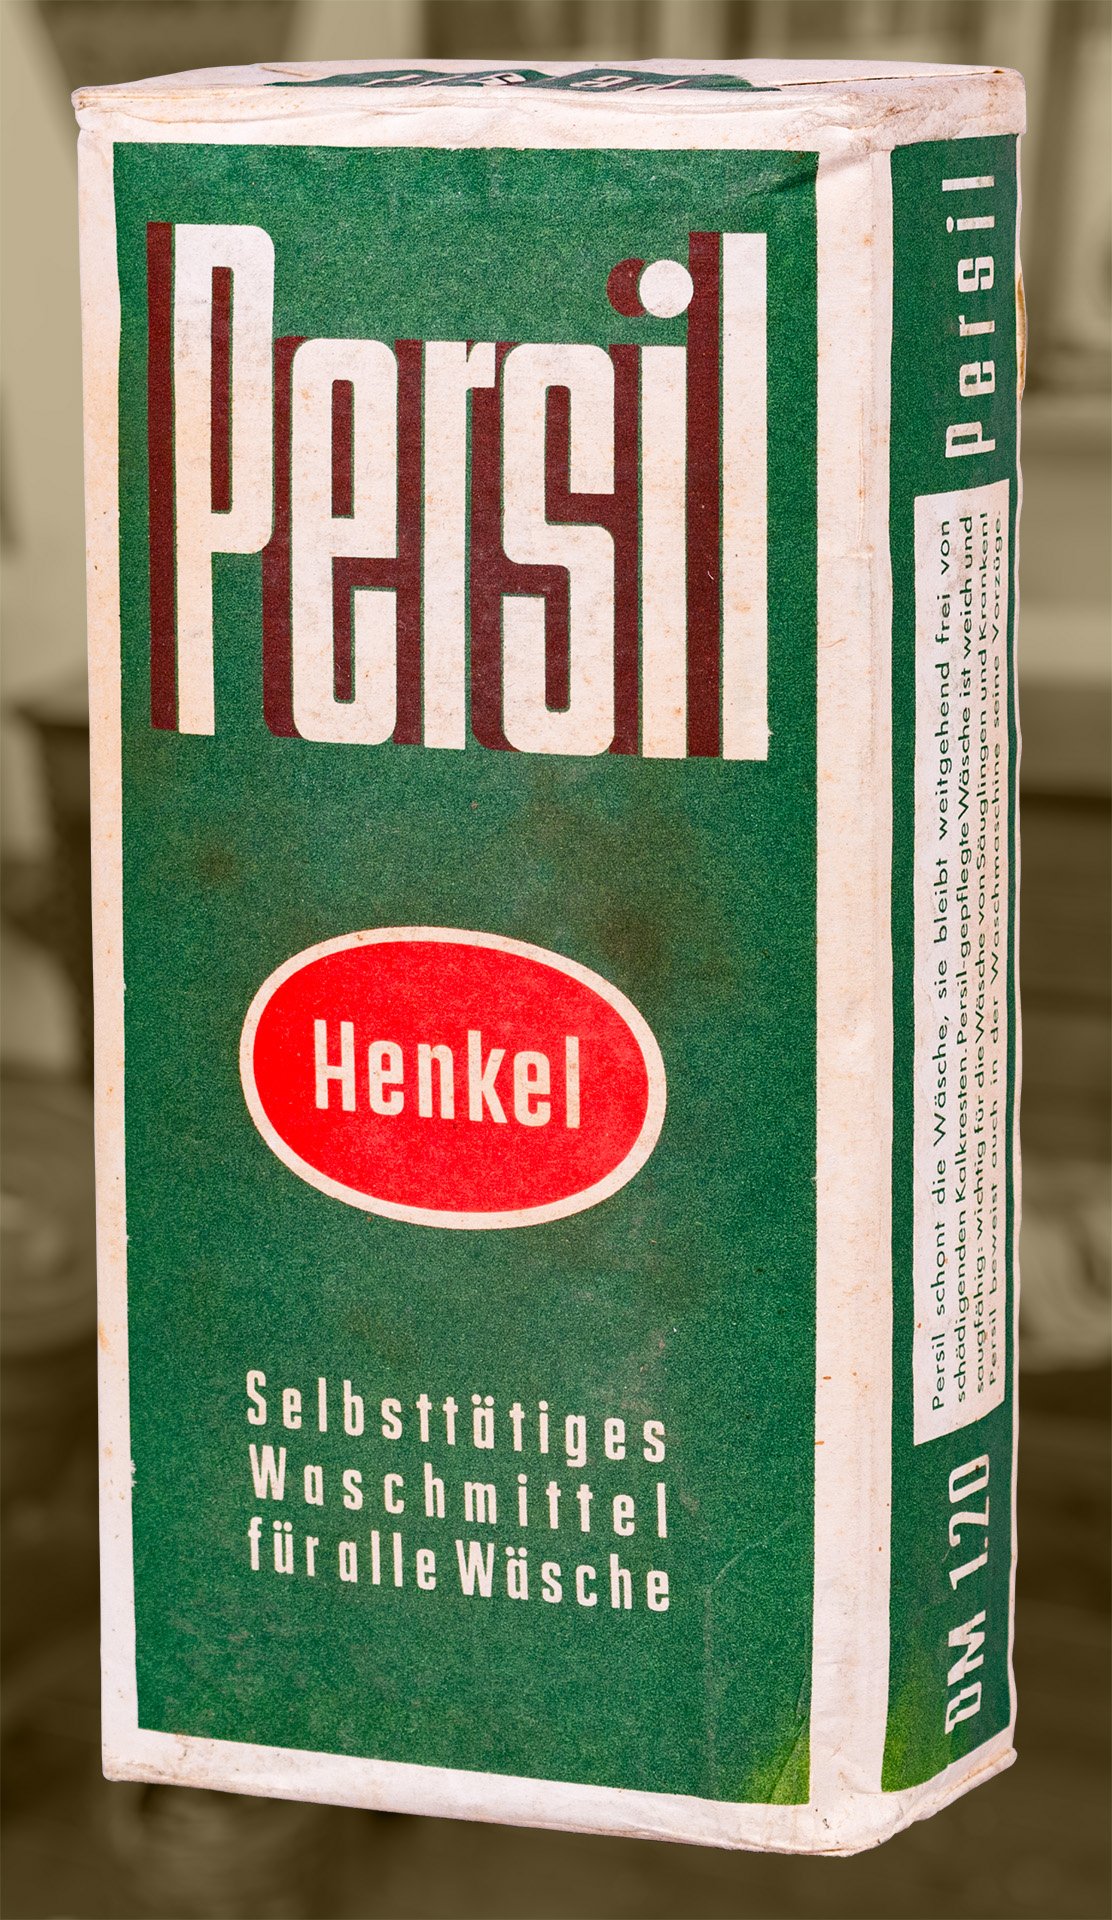 Persil Selbsttätiges Waschmittel (Schiffahrtsmuseum Unterweser CC BY-NC-SA)